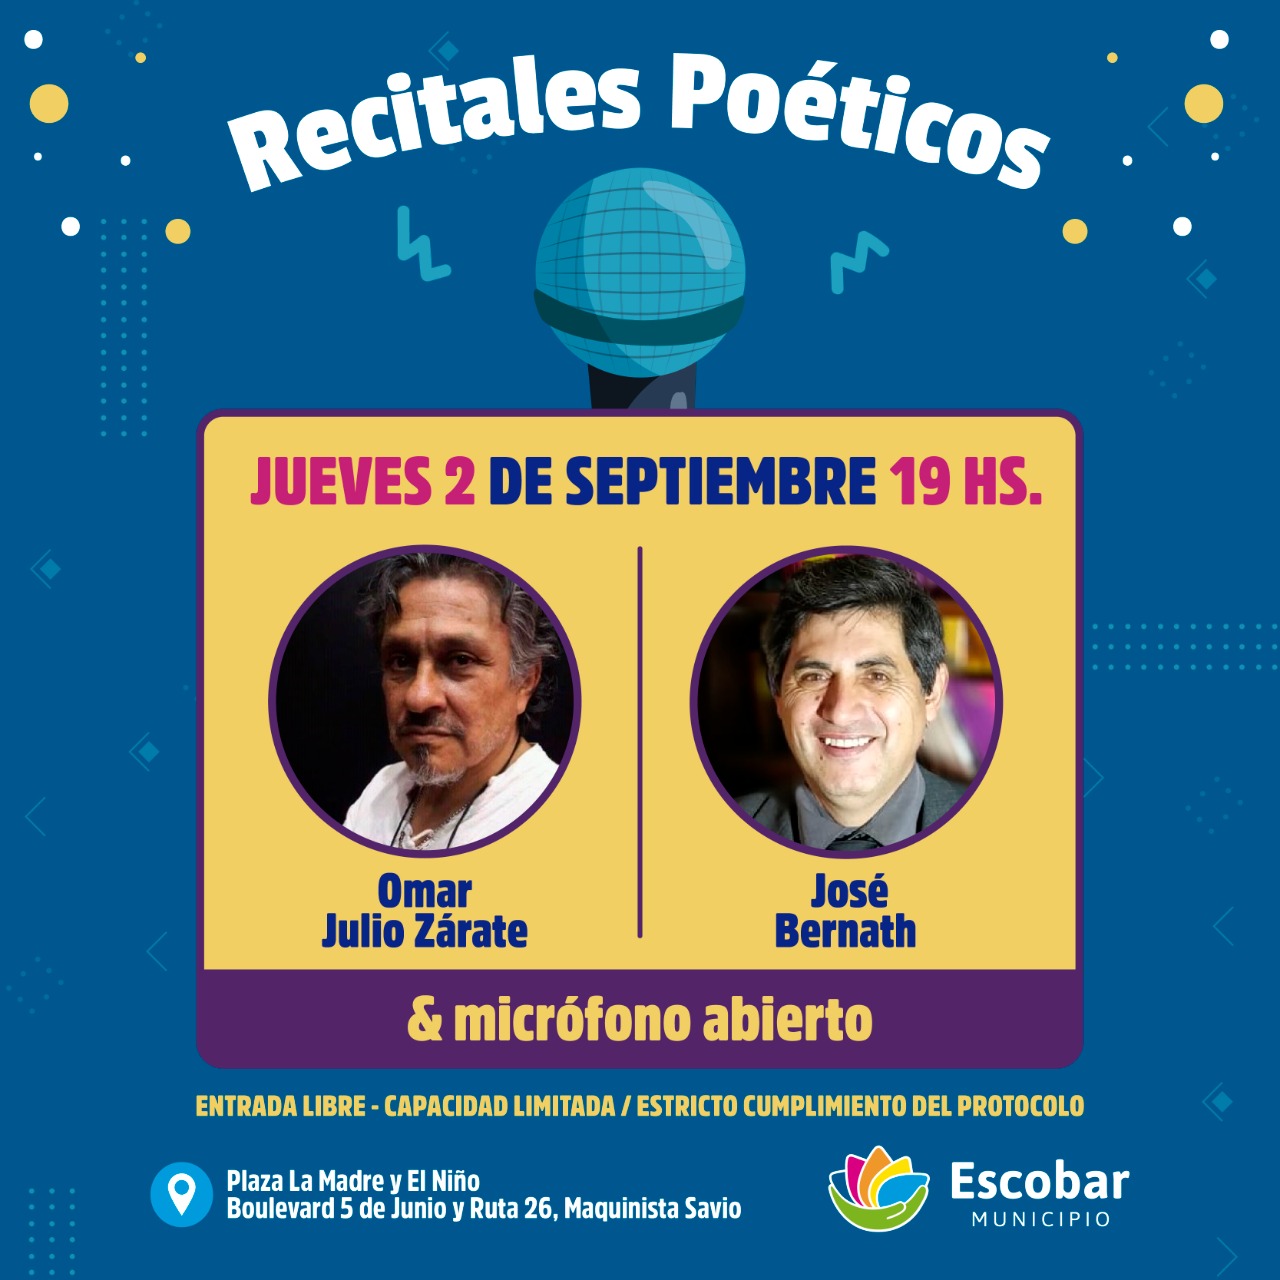 Con Omar Julio Zárate & José Bernath , continúa el Ciclo de Recitales Poéticos de Escobar